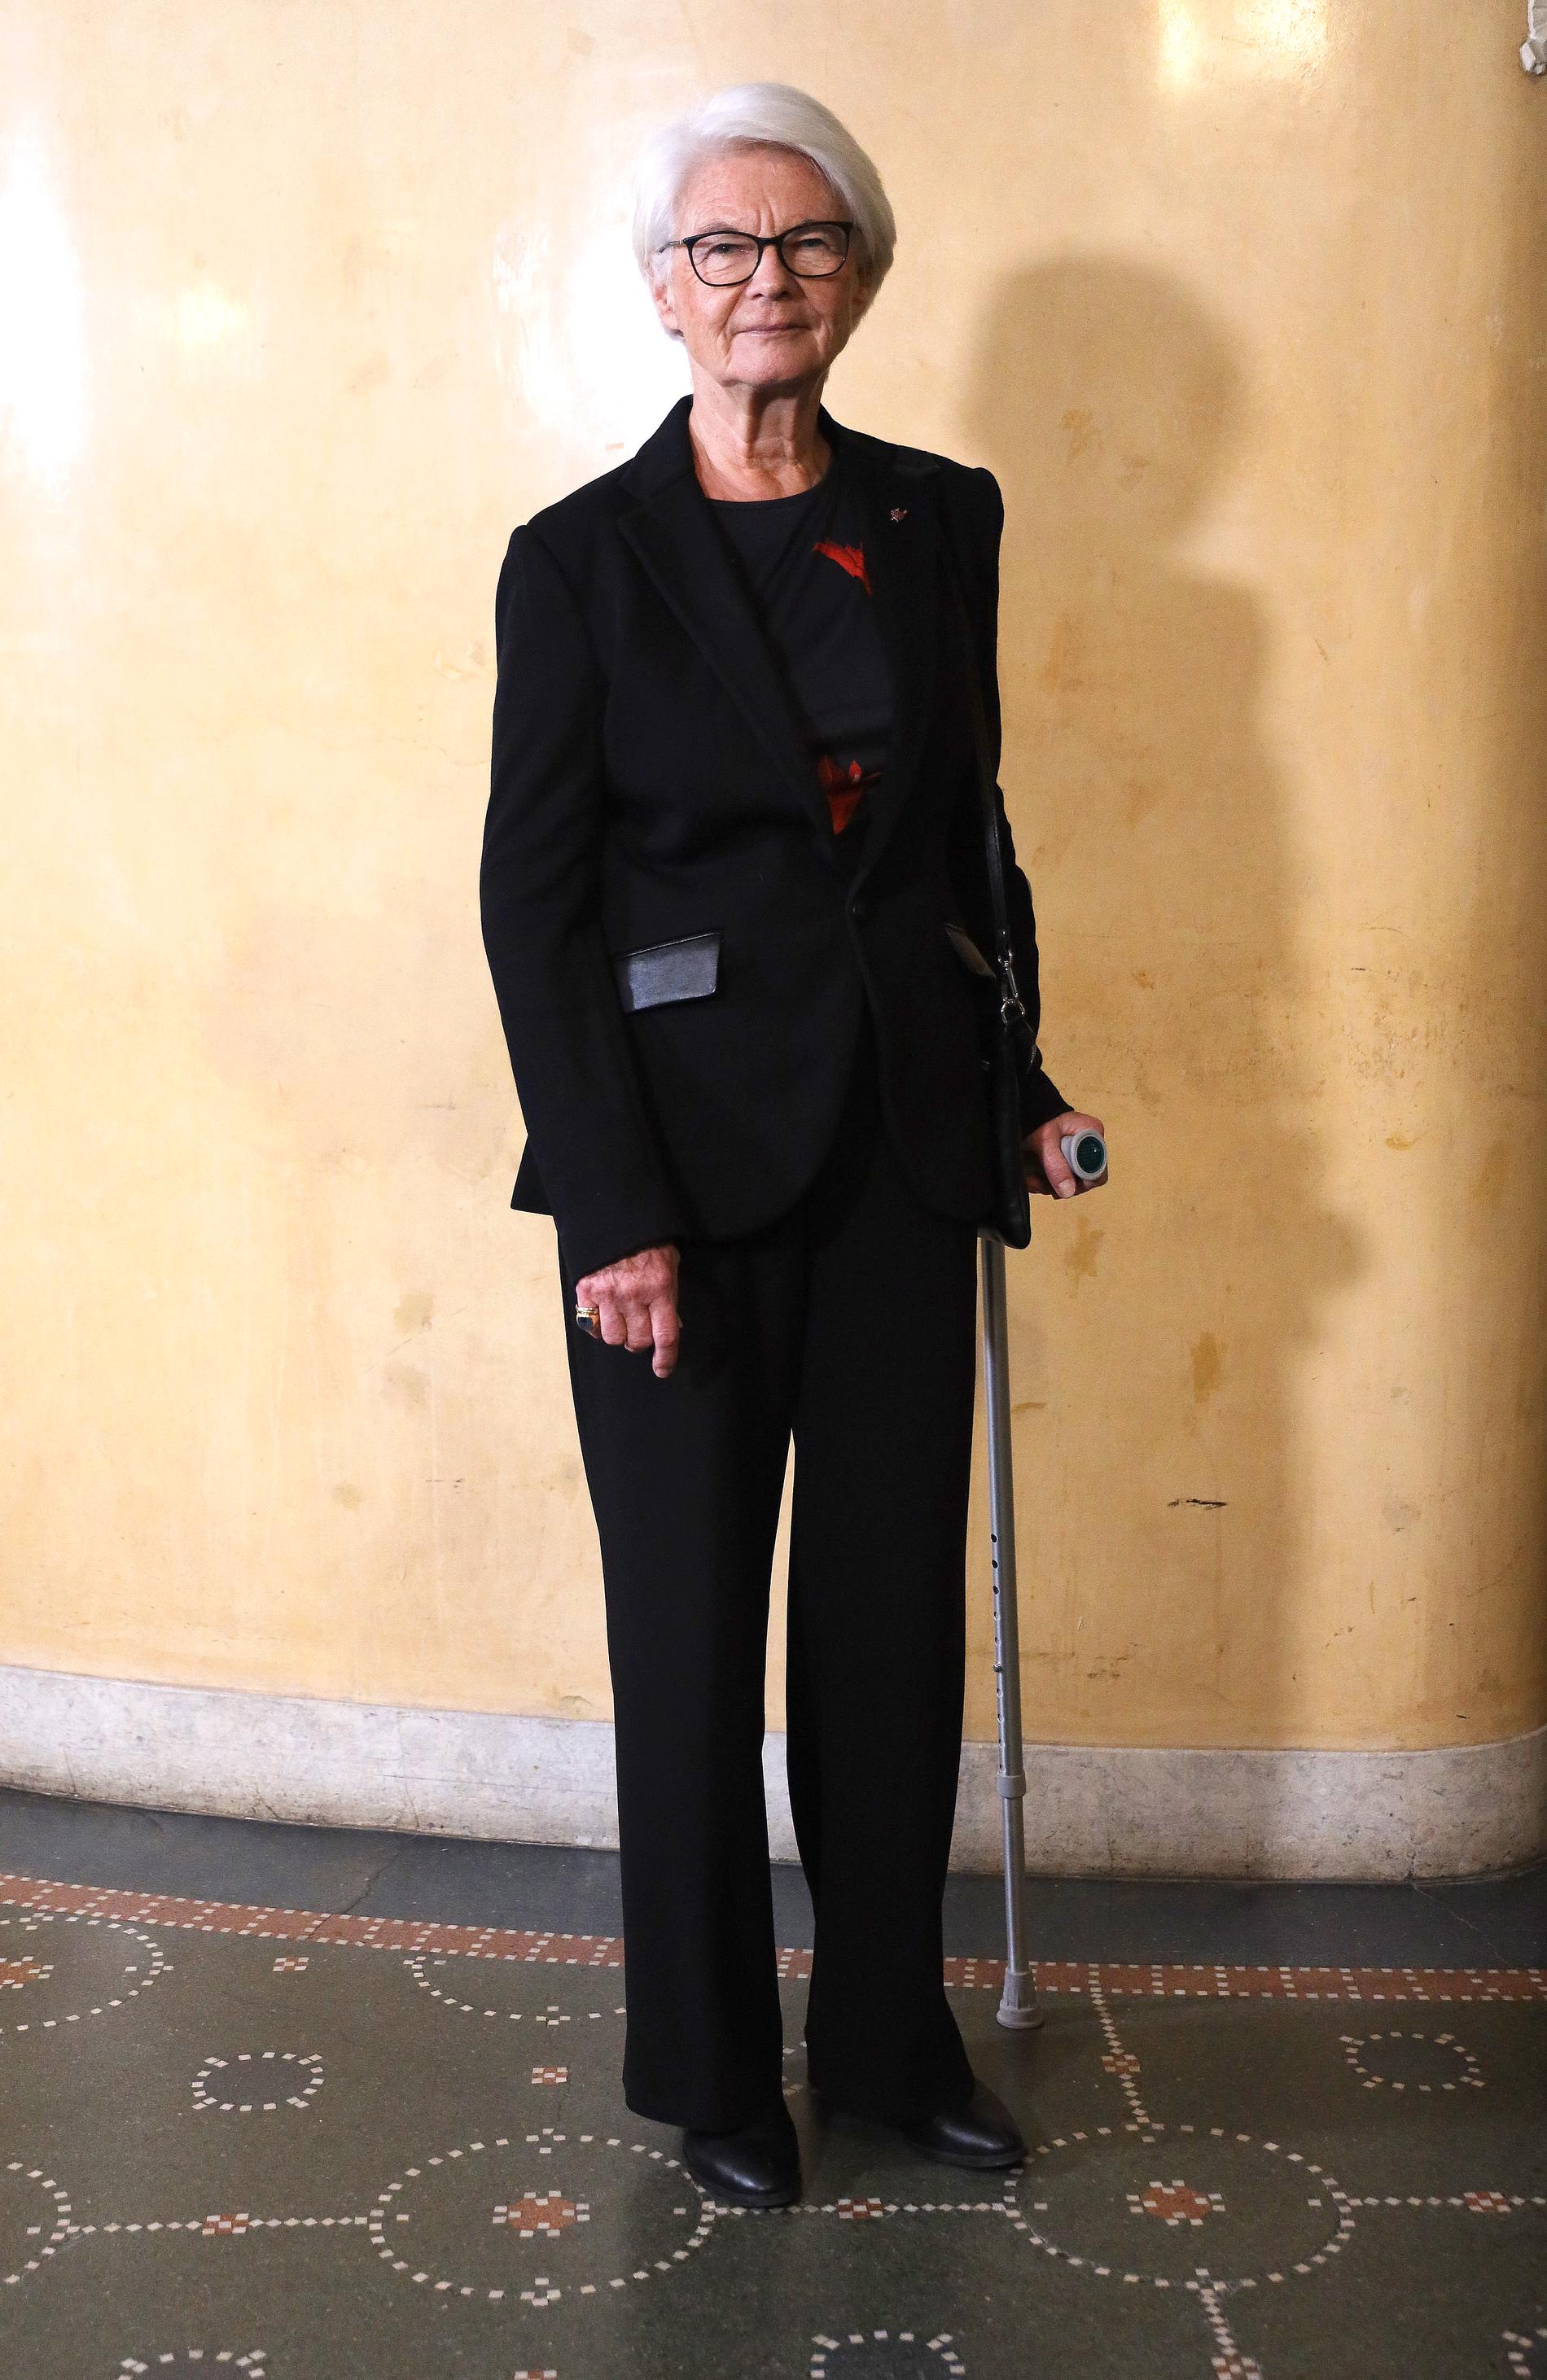 Elisabeth Tarras-Wahlberg kom gåendes med en krycka.